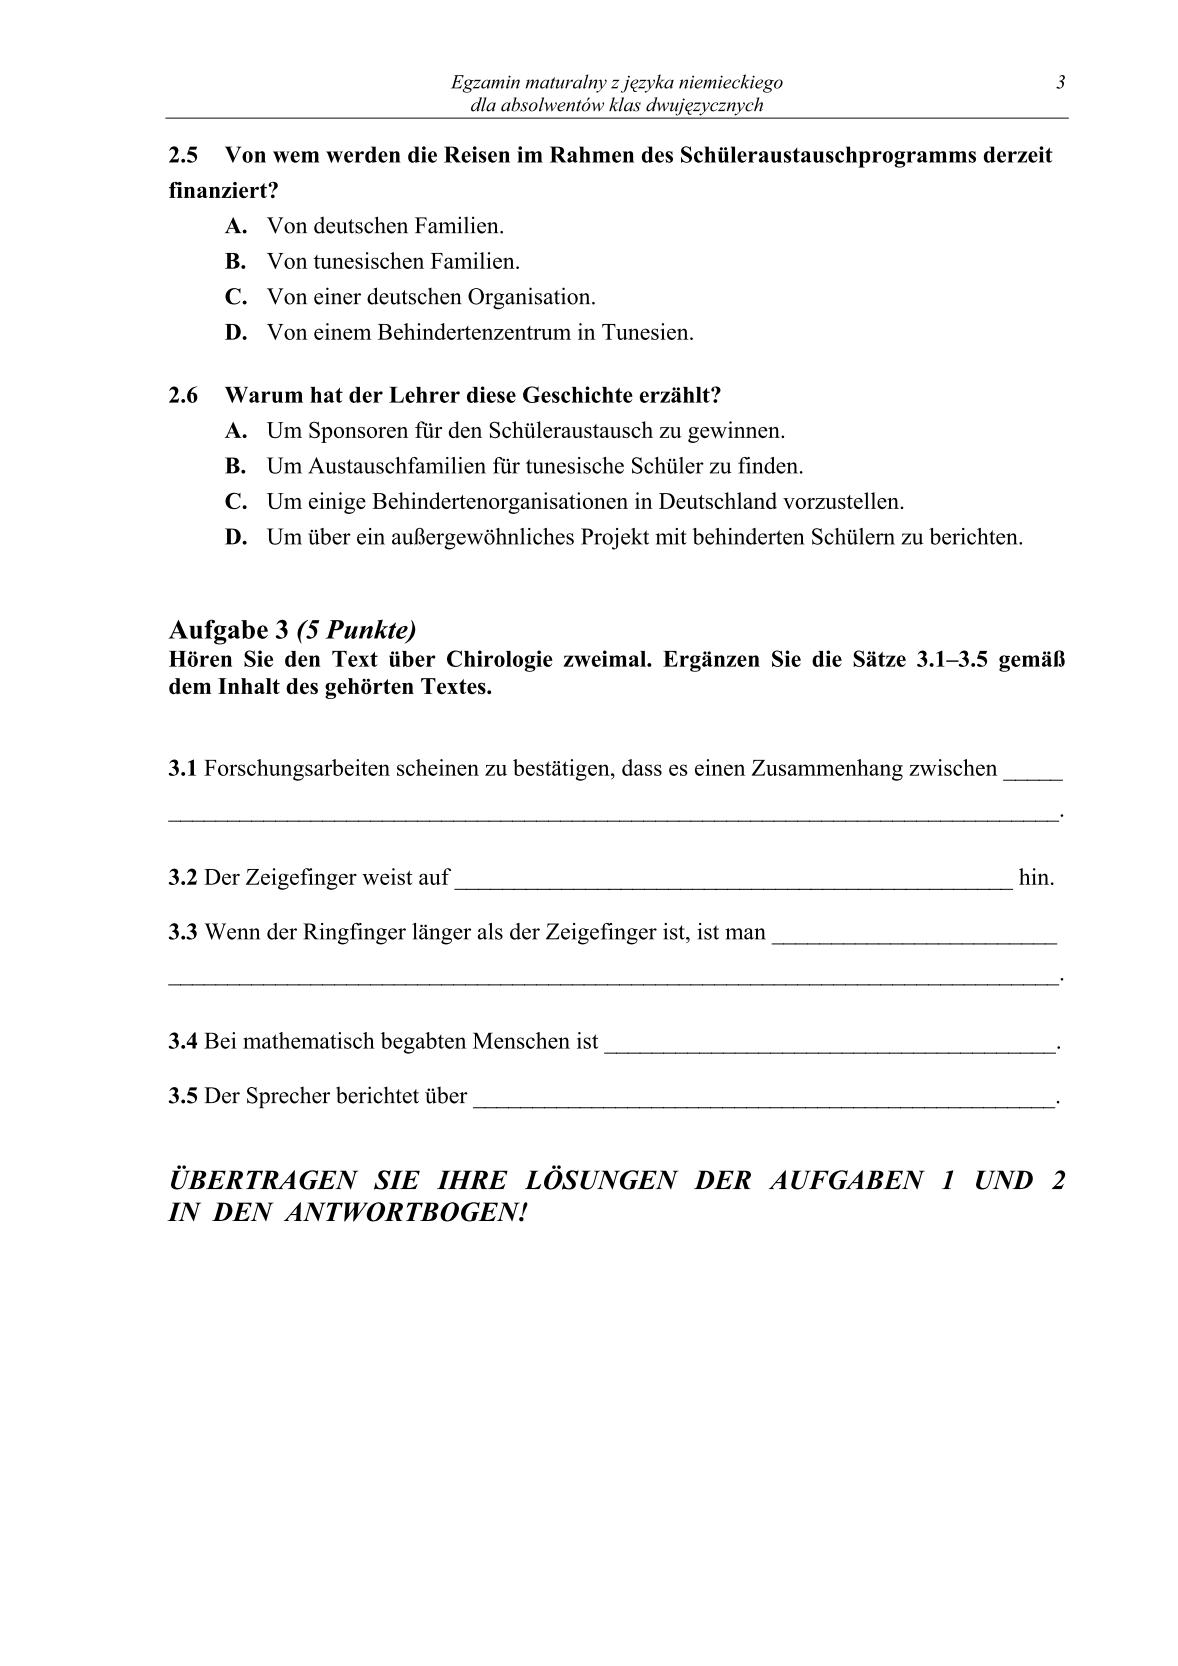 pytania-jezyk-niemiecki-dla-absolwentow-klas-dwujezycznych-matura-2014-str.3